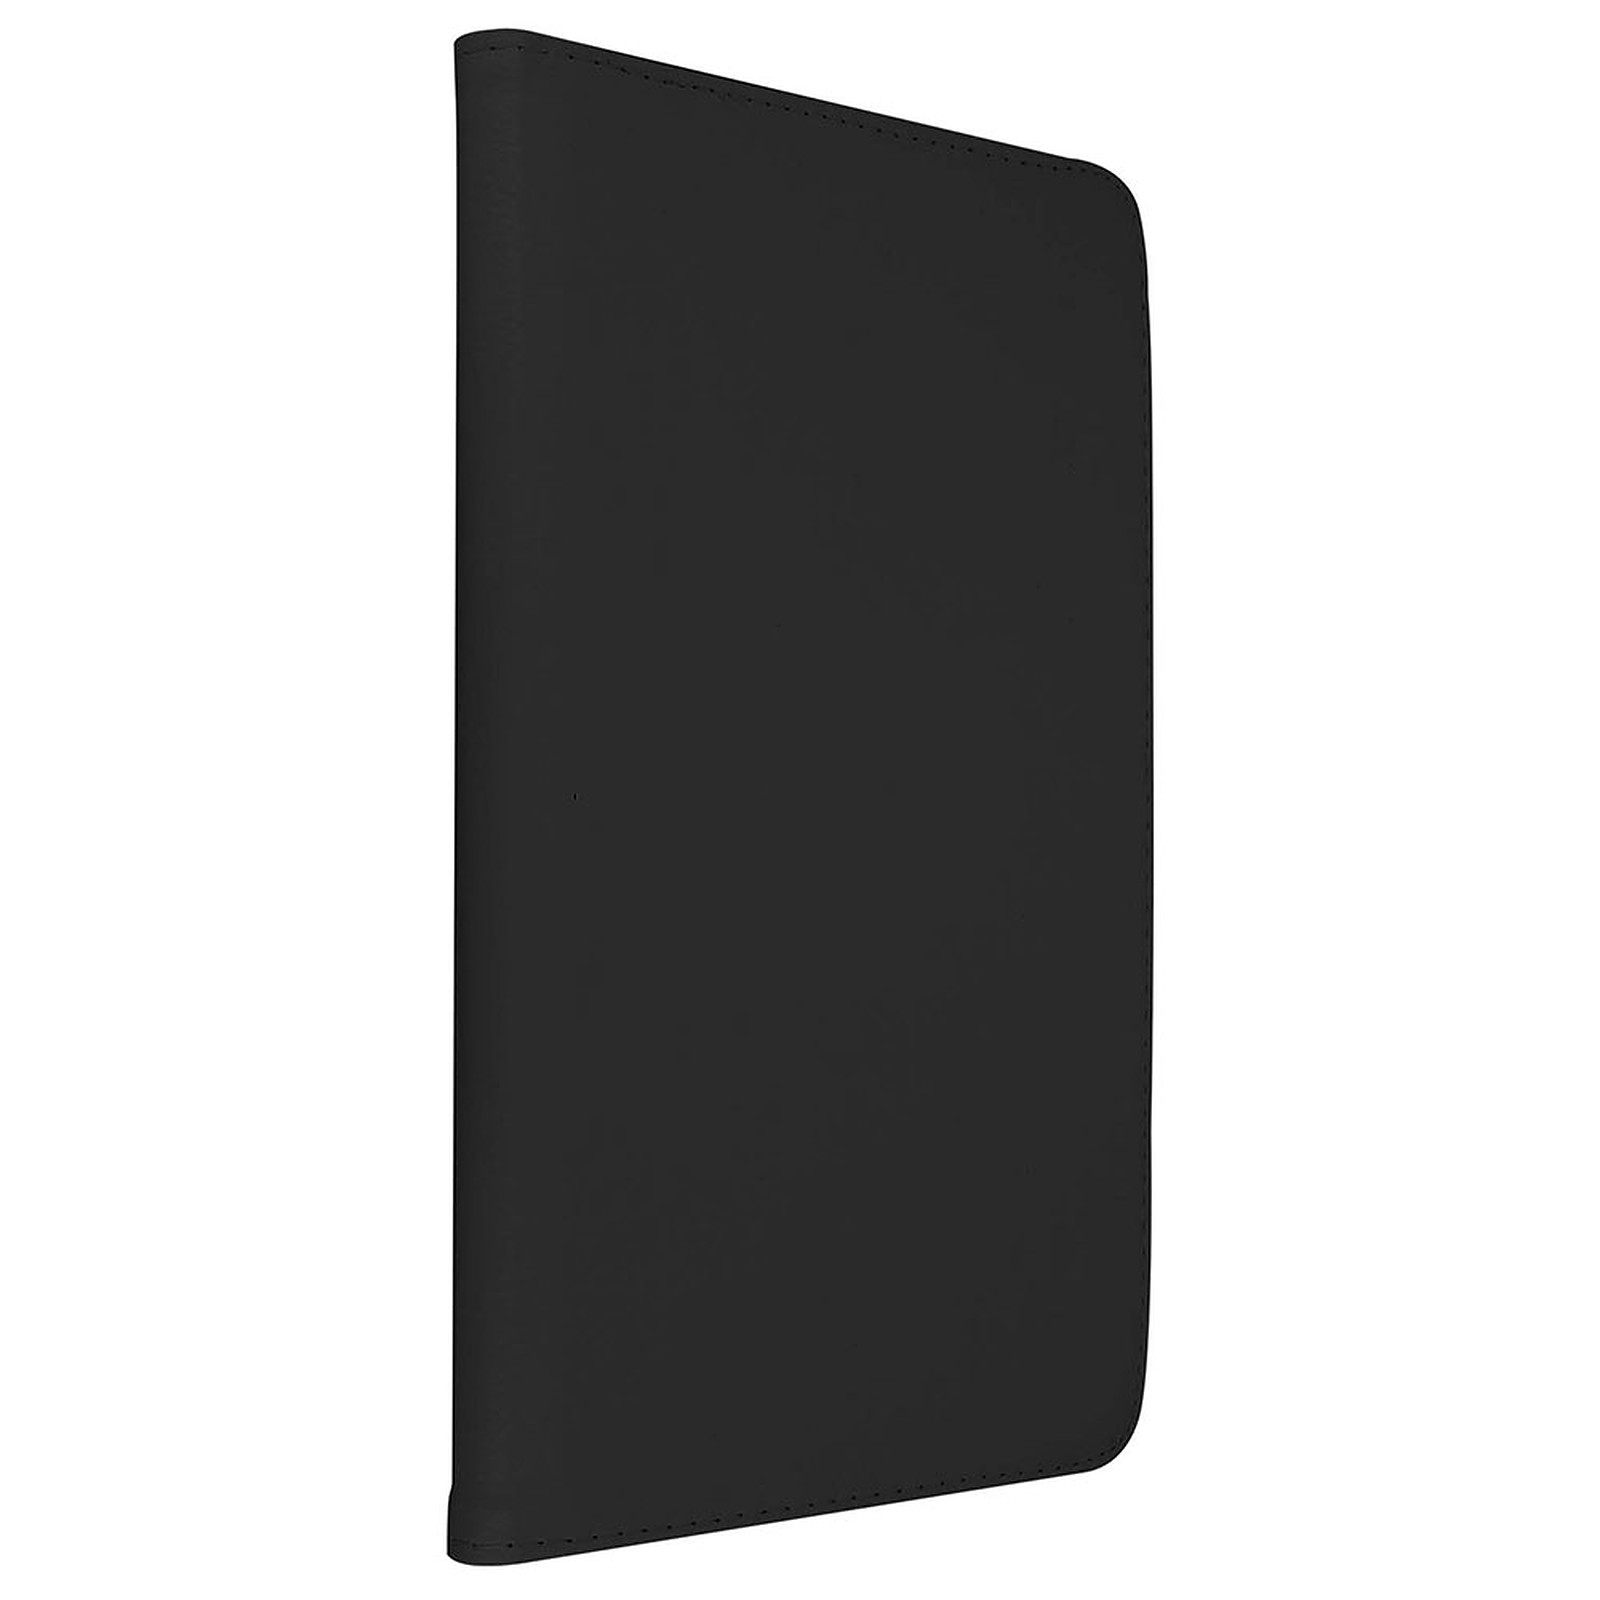 Akashi Etui Folio Galaxy Tab A 10.5" Noir · Occasion - Etui tablette Akashi - Occasion